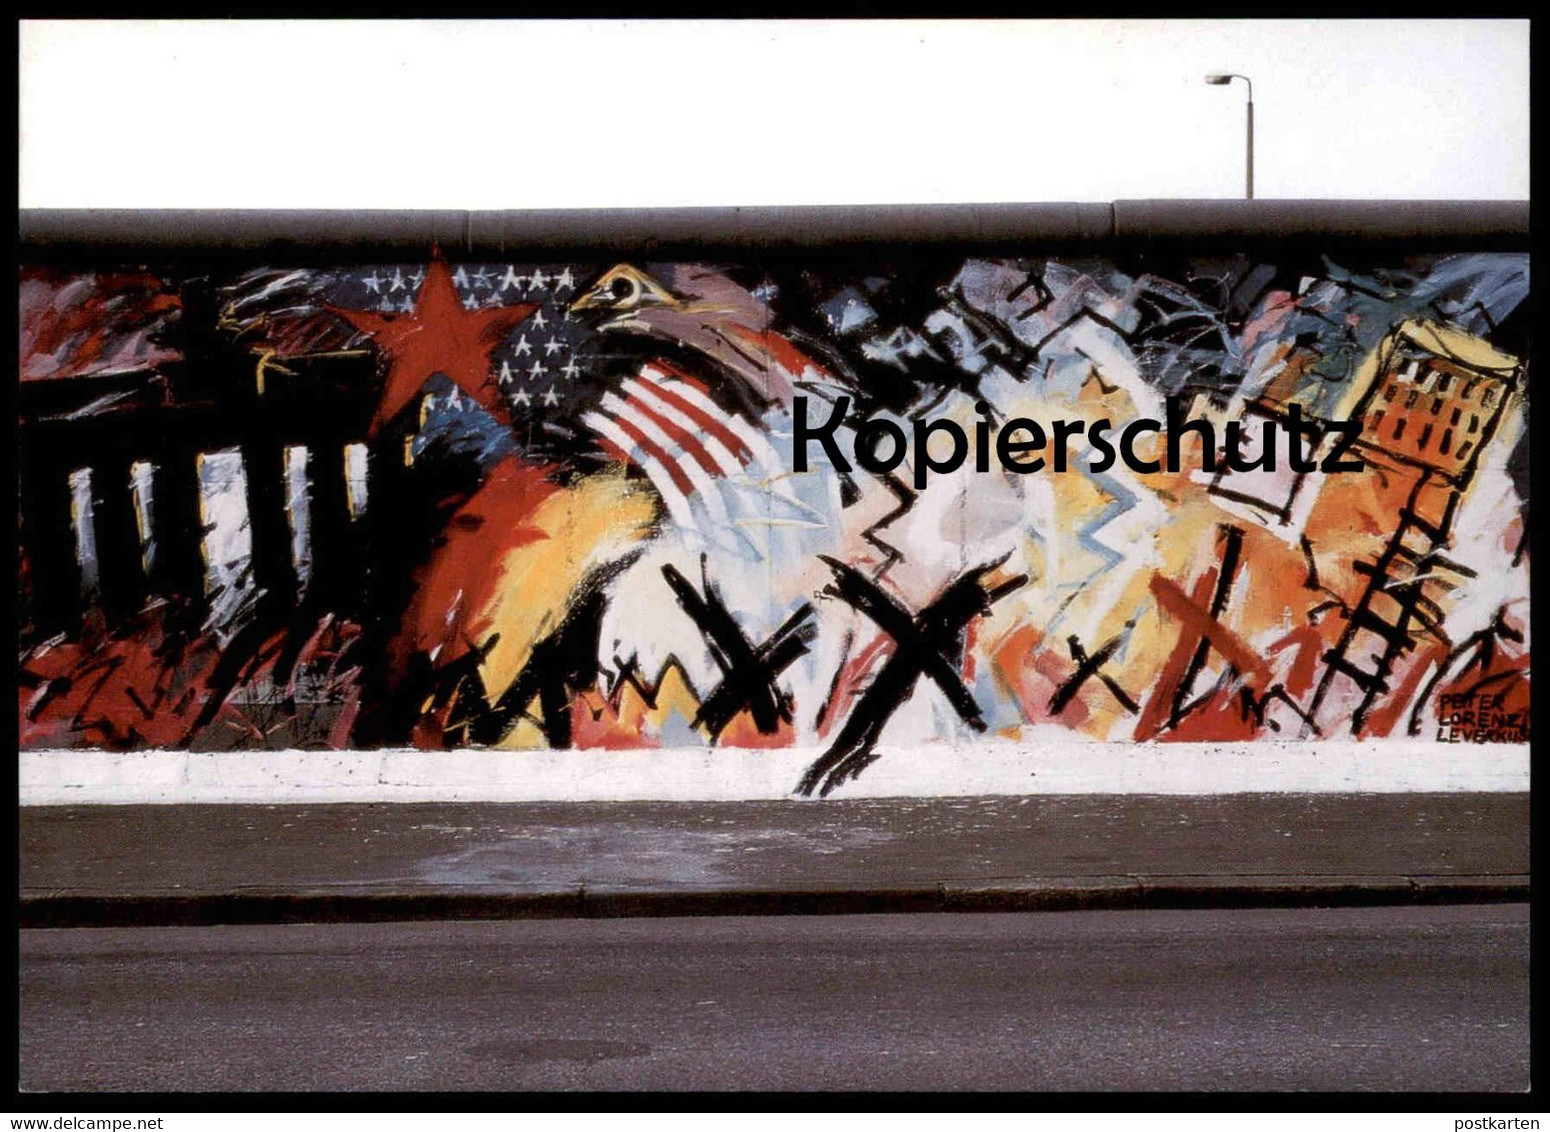 ÄLTERE POSTKARTE BERLINER MAUER THE WALL LE MUR BERLIN PETER LORENZ LEVERKUSEN ART GRAFFITI AMERICA Cpa Postcard - Berlin Wall